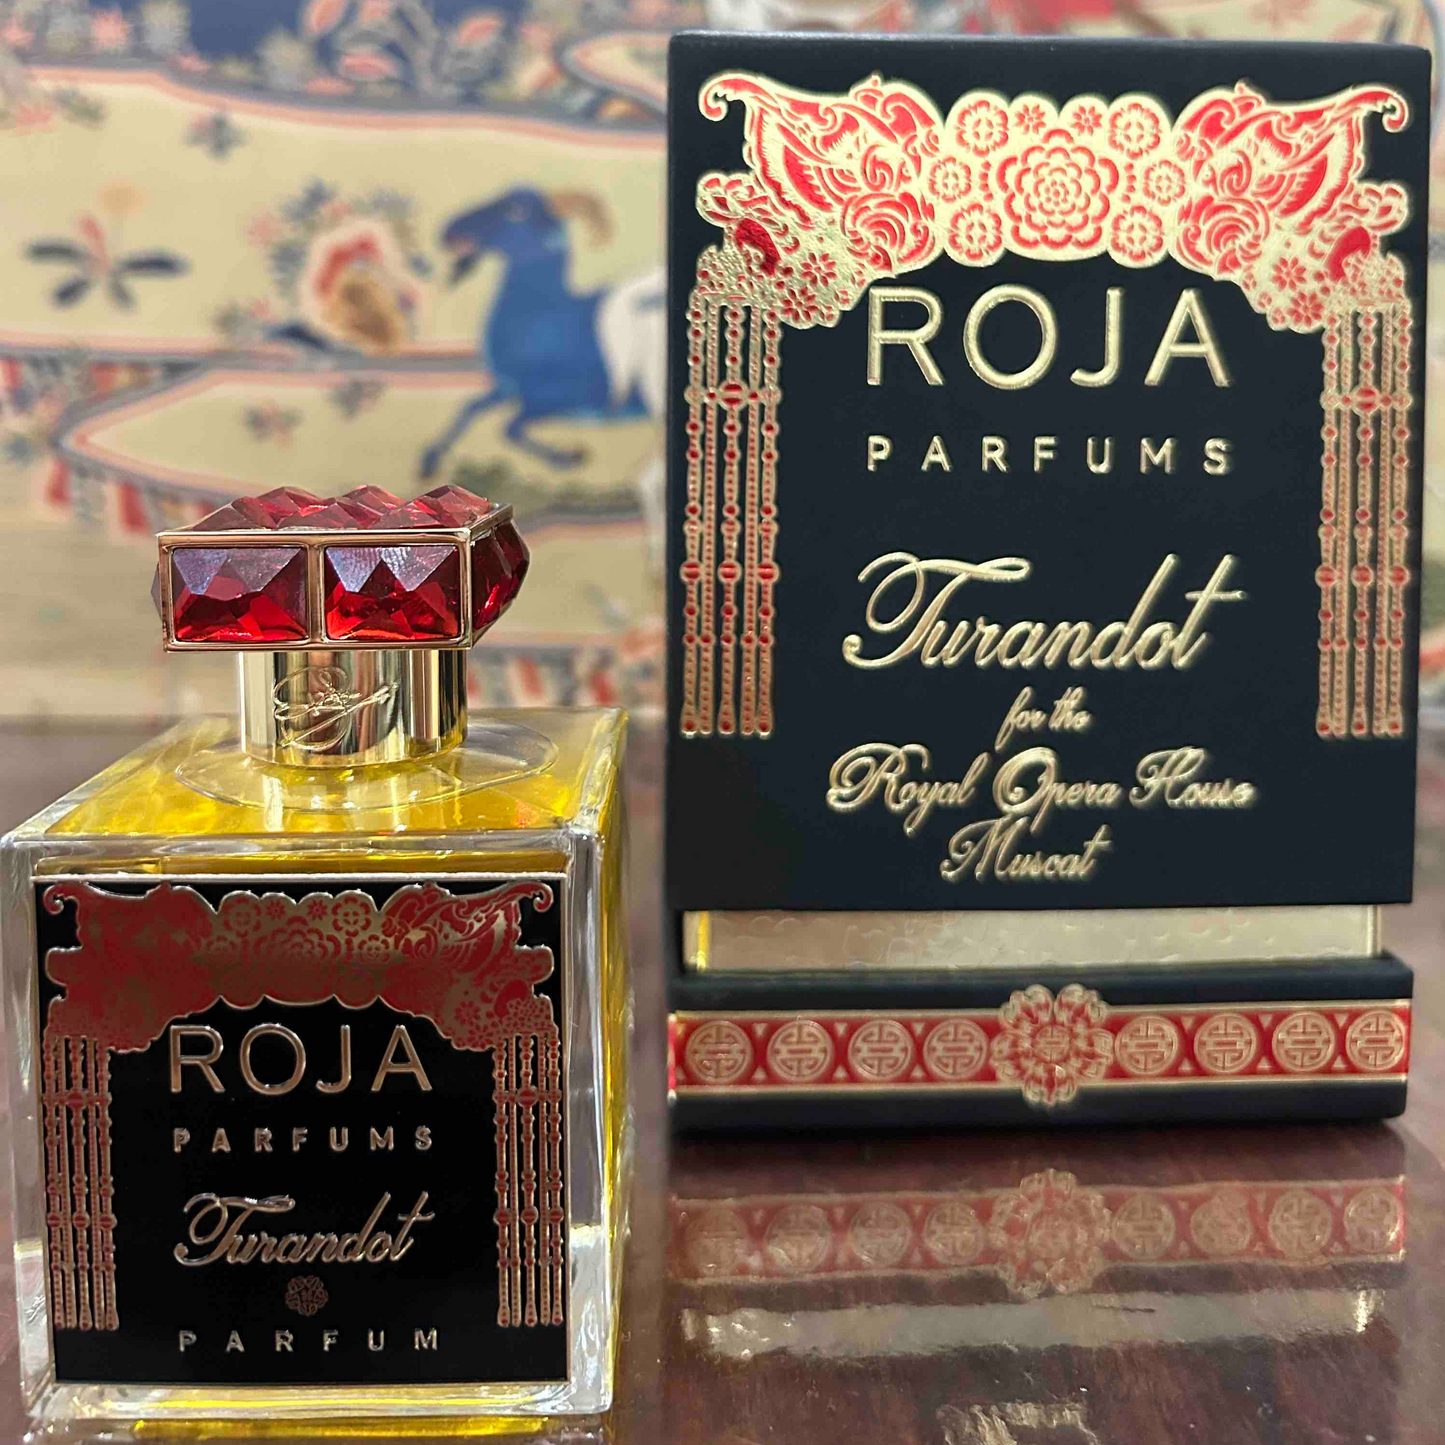 Roja Parfums Turandot